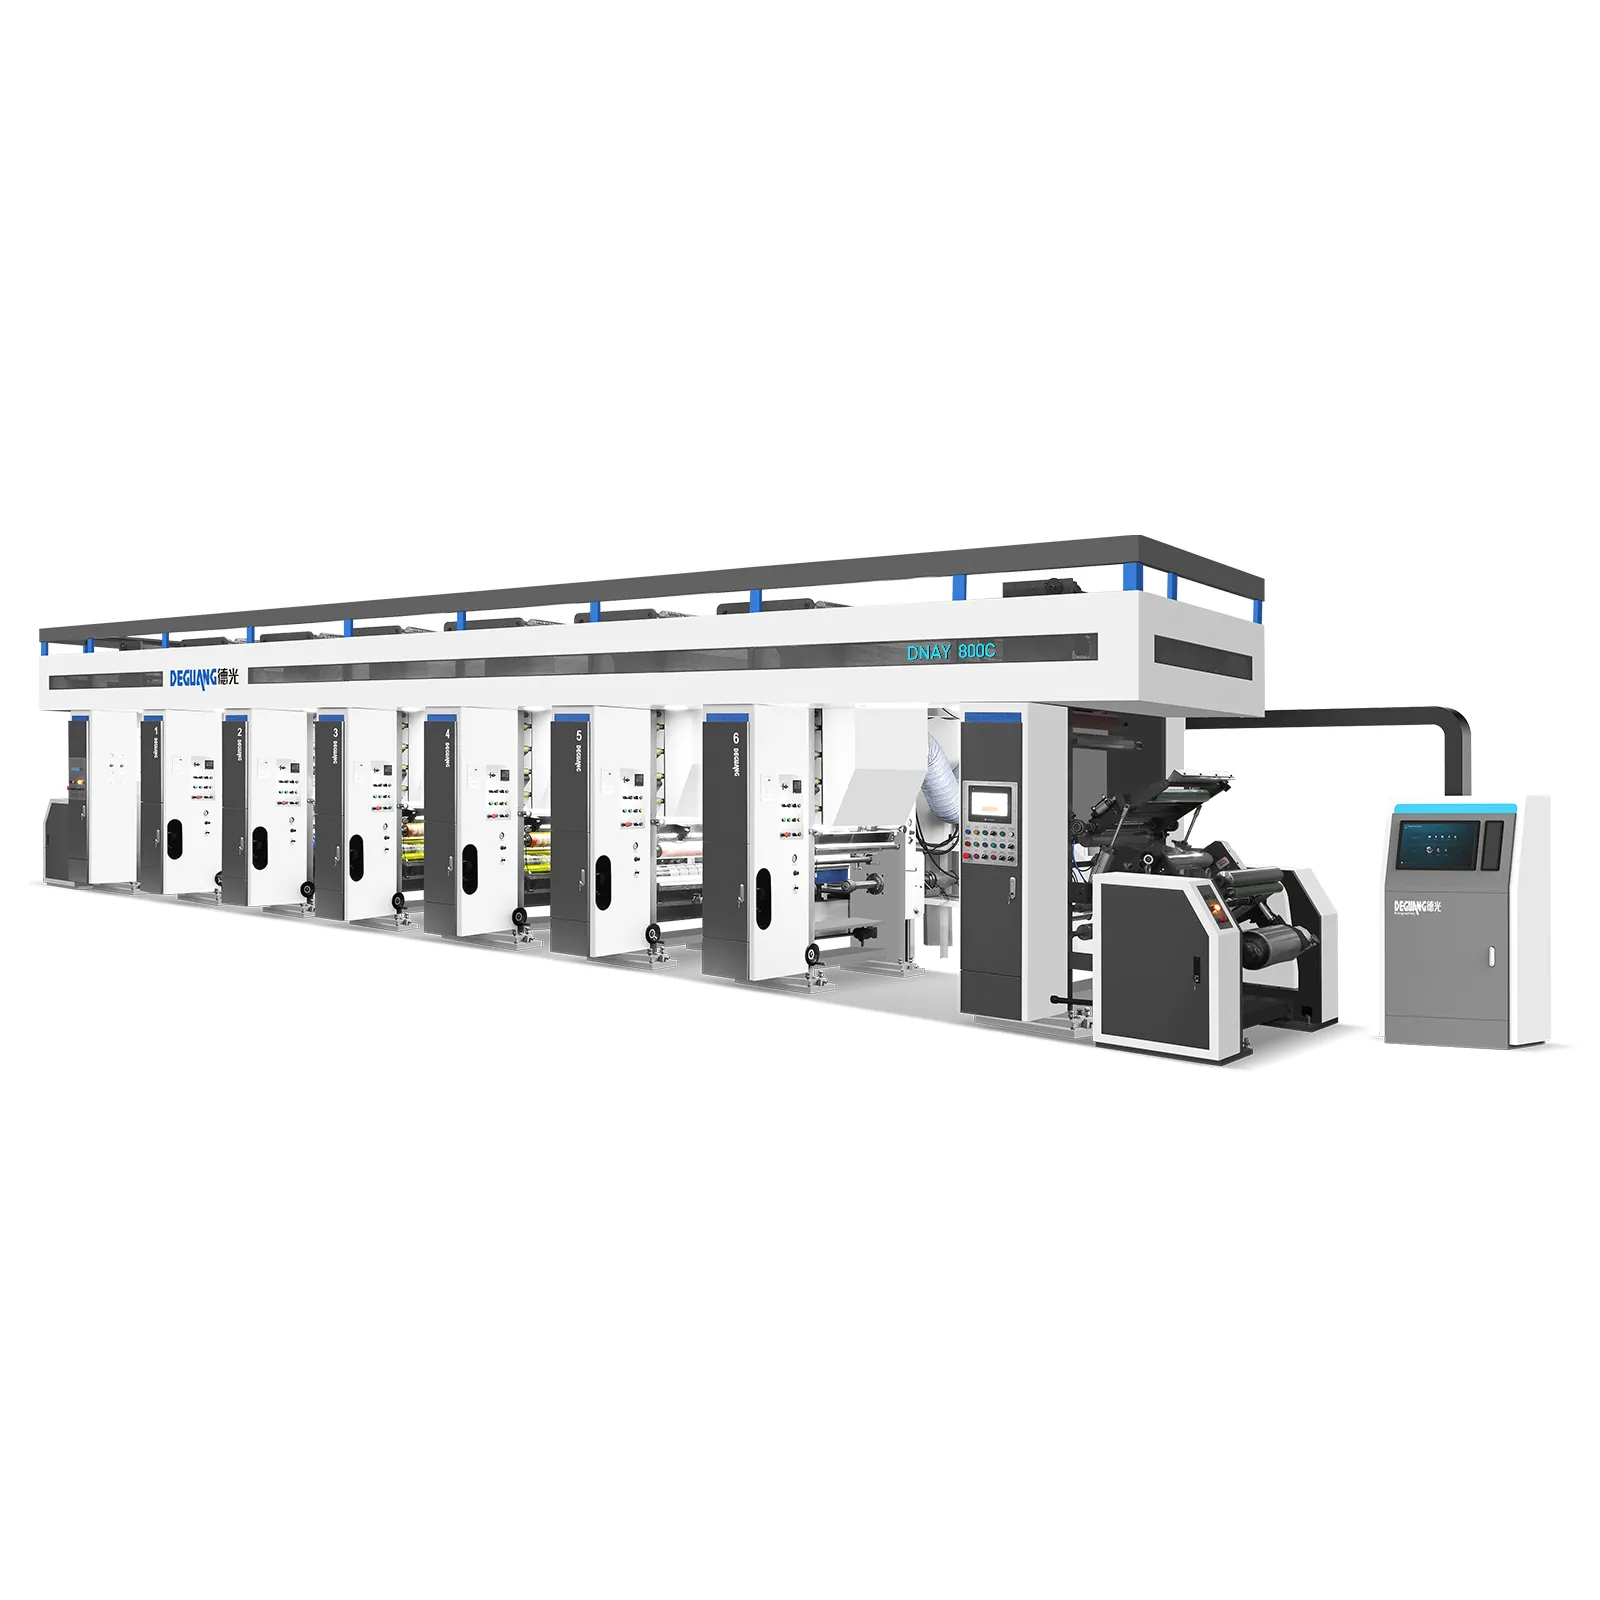 Горячая продажа модель высокоскоростная автоматическая регистрация общий ротогравюр печатная машина Компьютеризированный цветной регистр ротогравюрный пресс CE